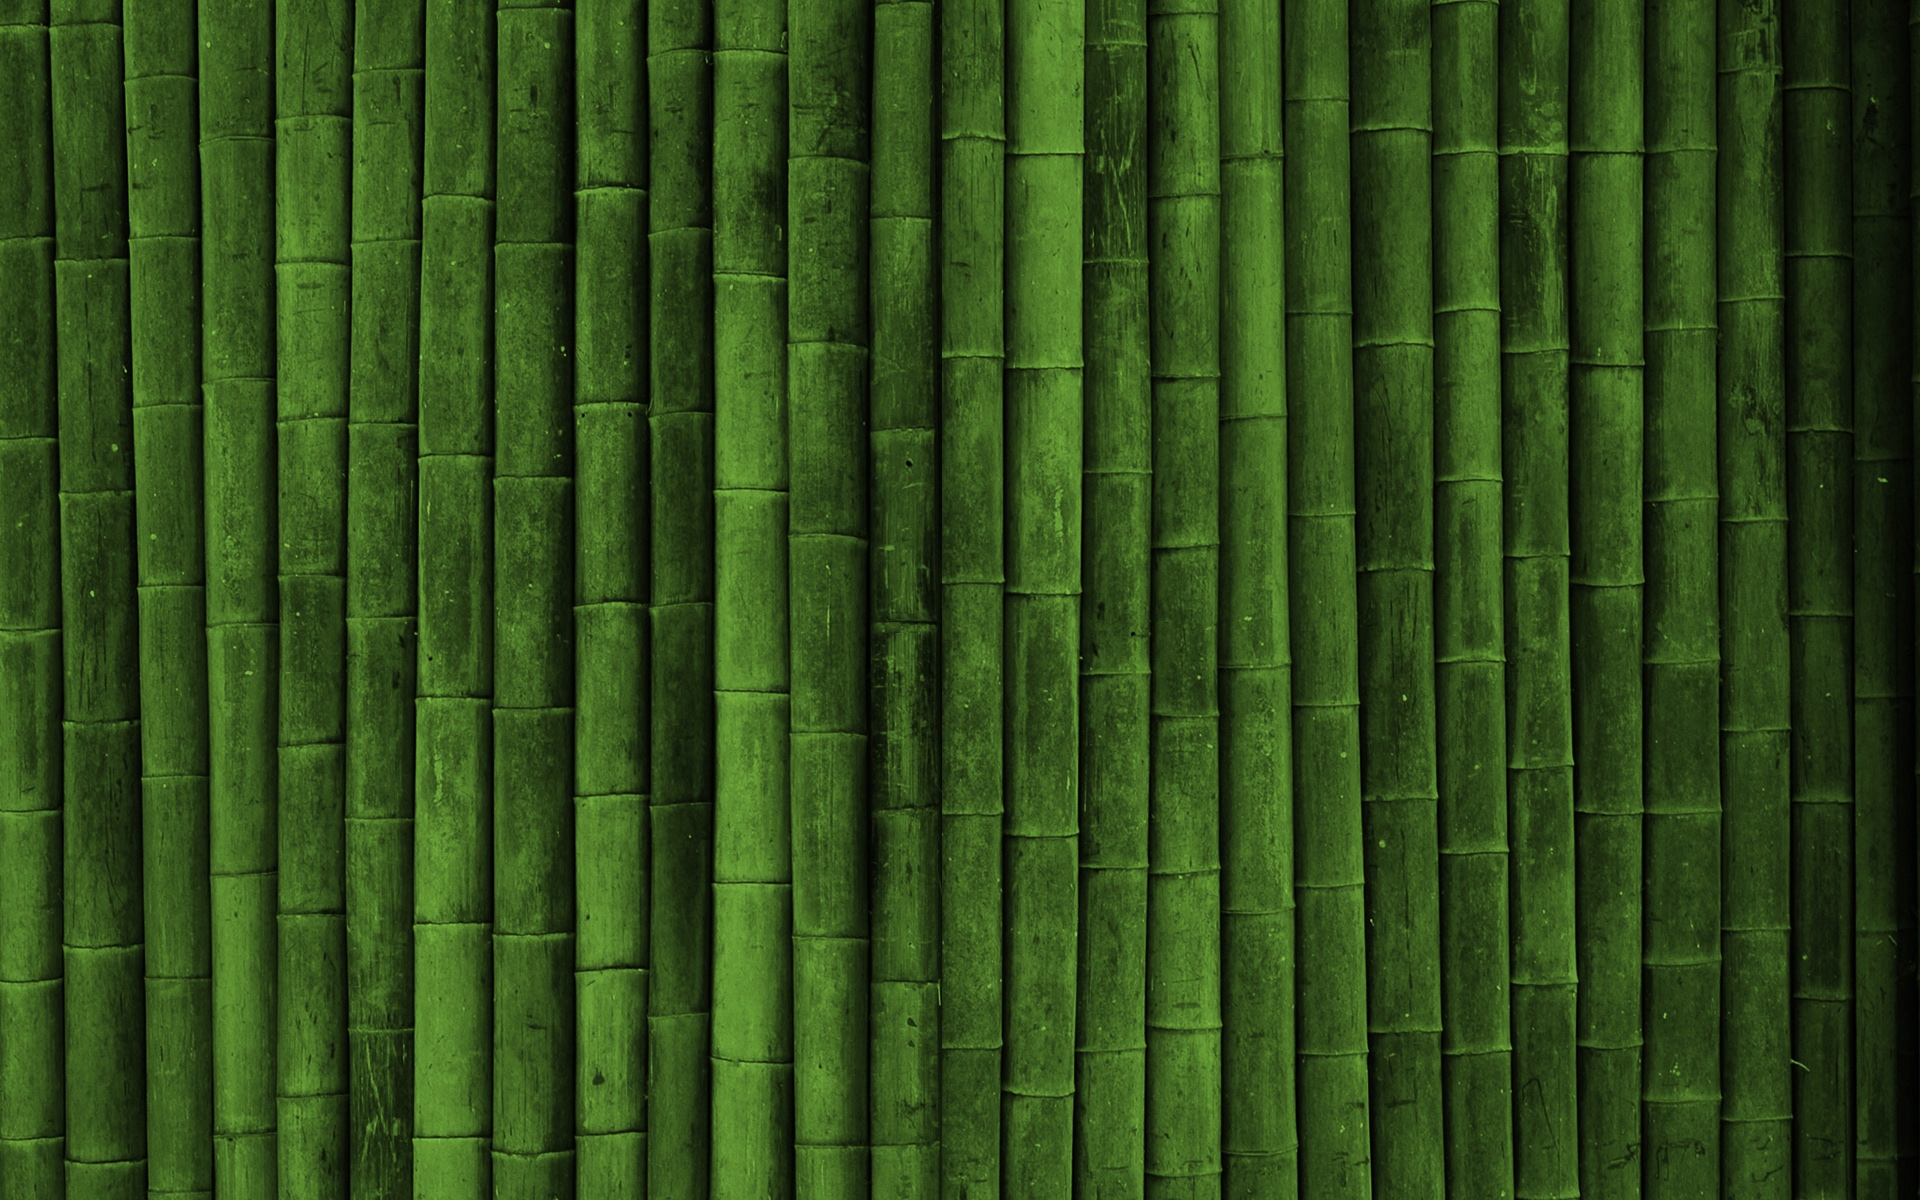 Bamboo Wallpaper Stock Photos